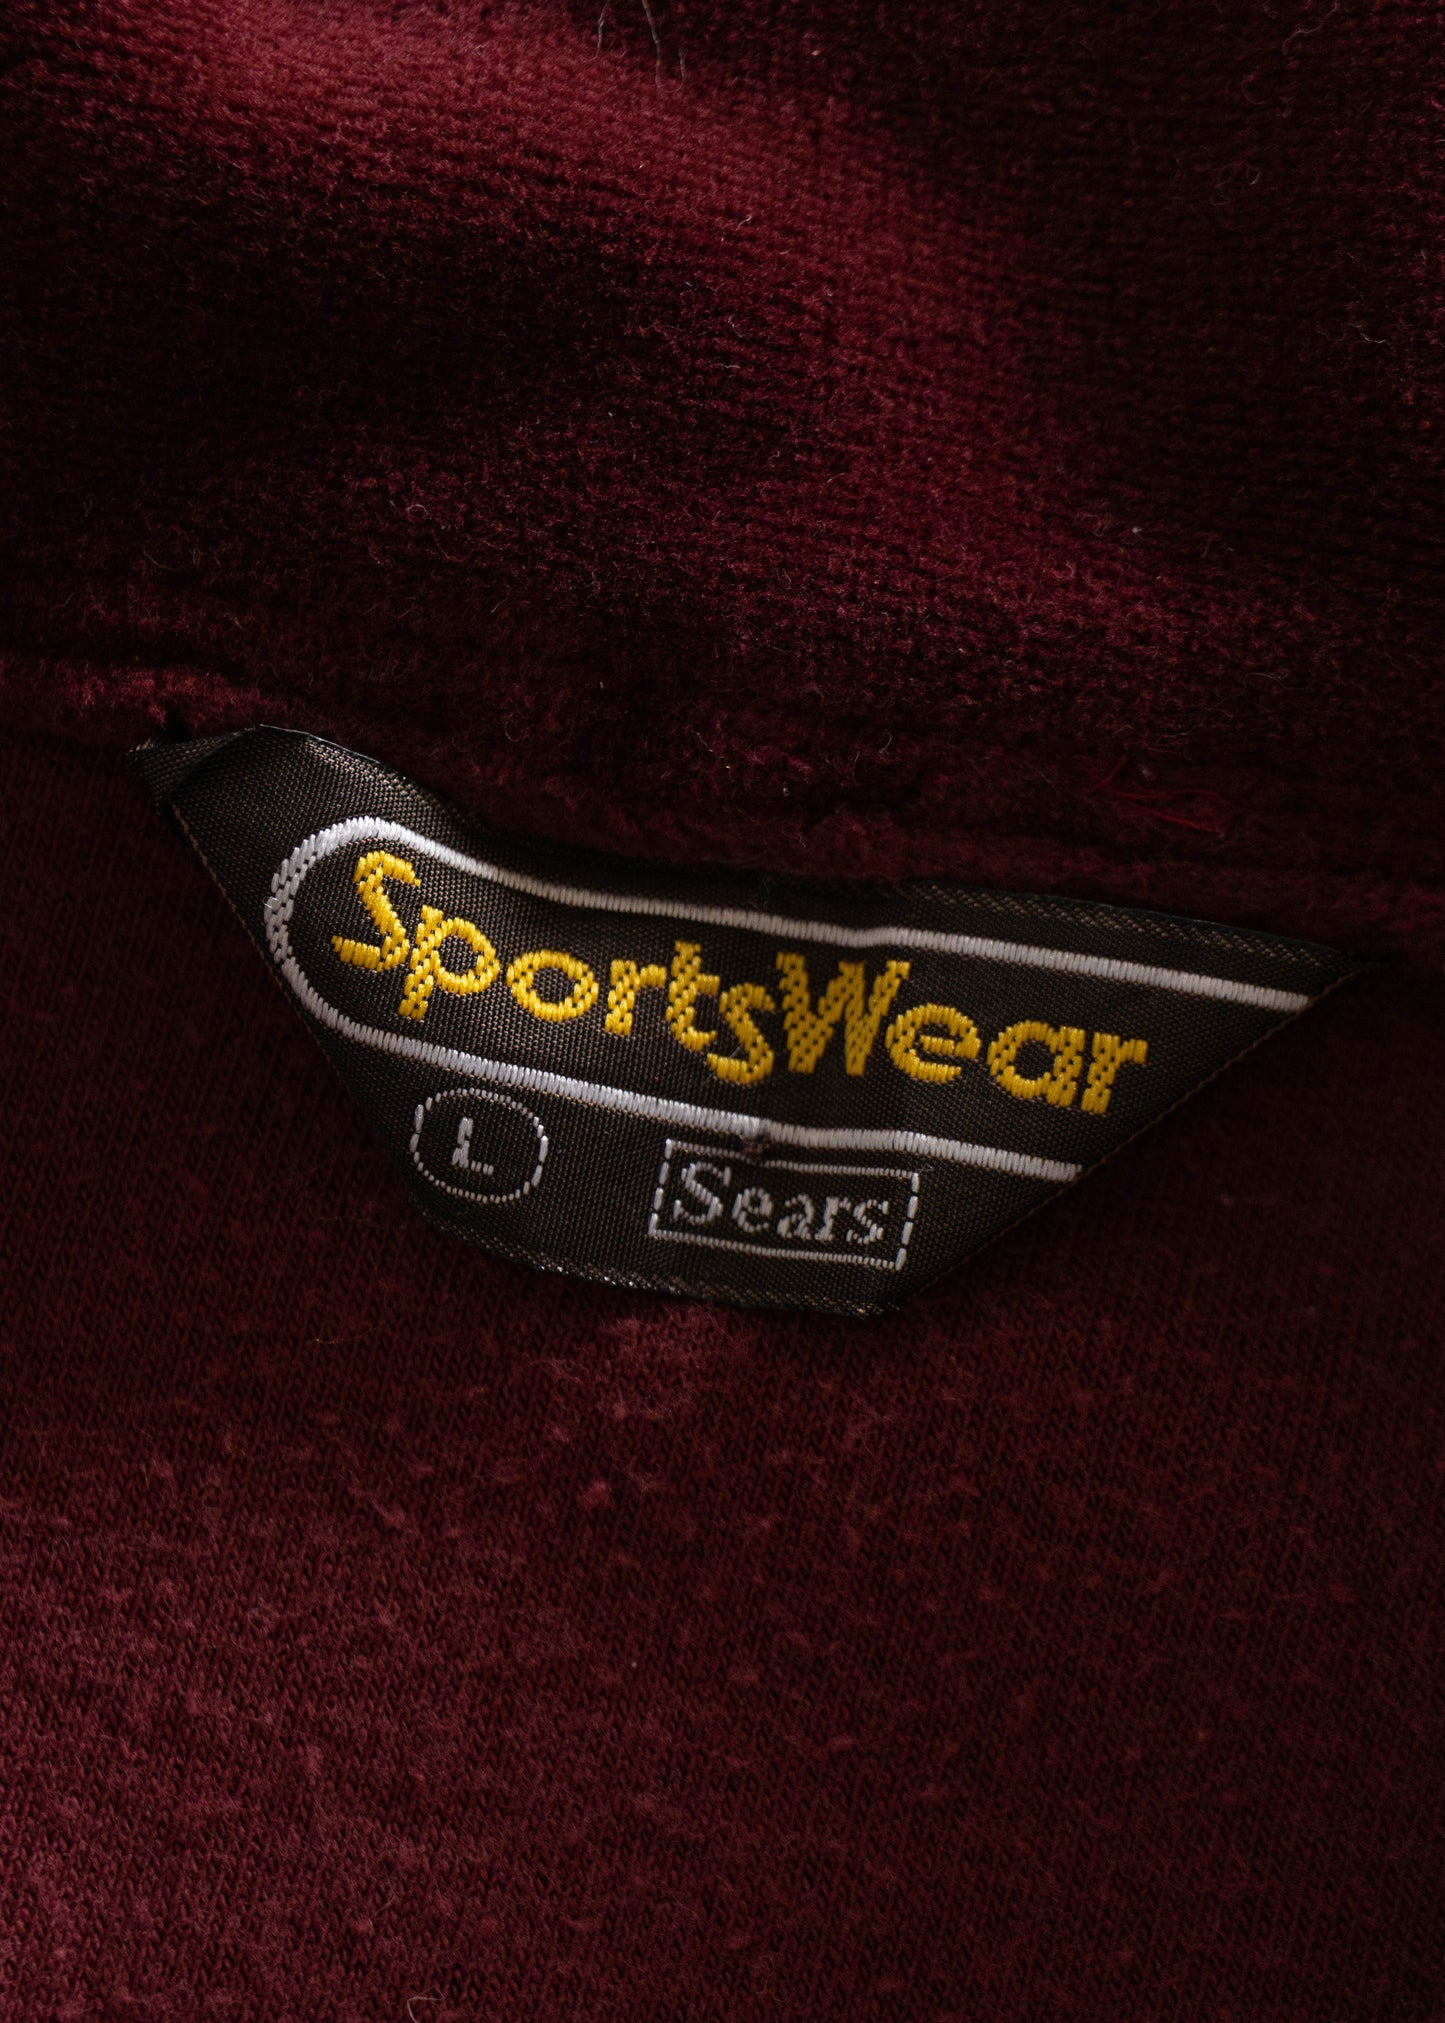 1980s Sears Sportswear Velour Long Sleeve Shirt Size M/L